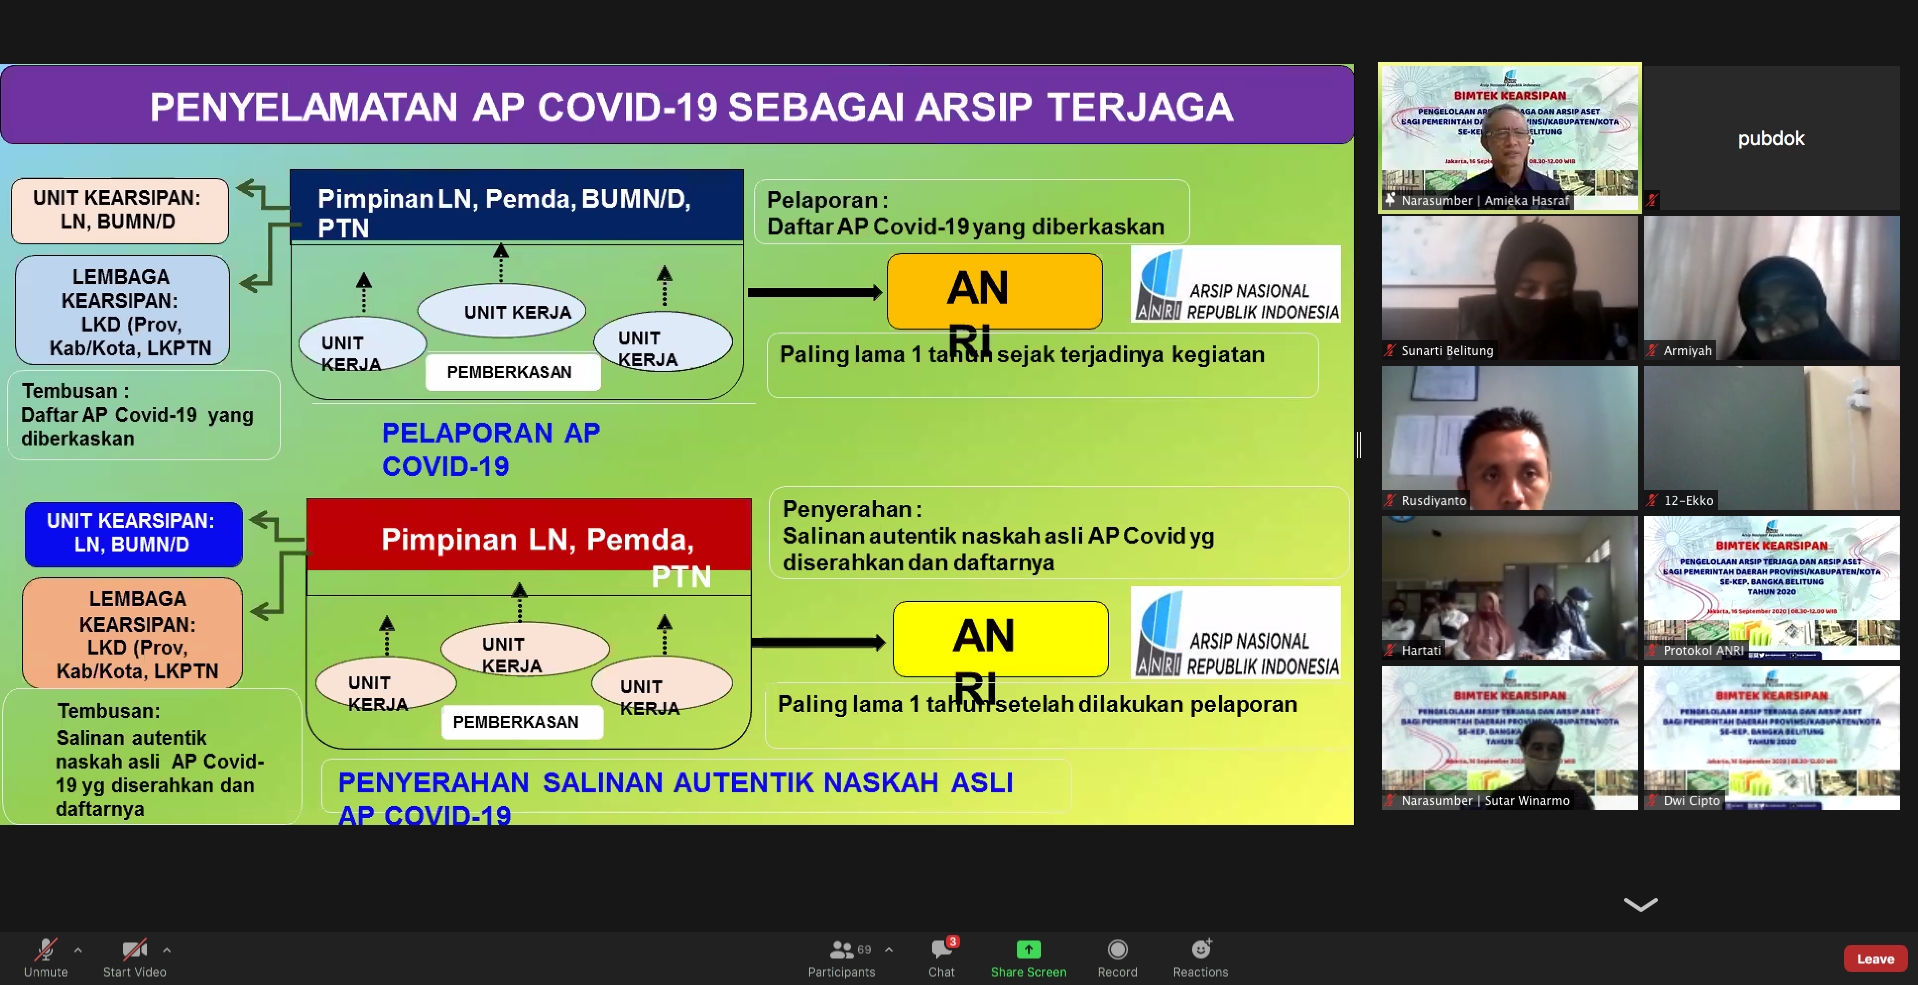 ANRI Gelar Bimtek Pengelolaan Arsip Terjaga dan Arsip Aset bagi Pemerintah Daerah se-Kepulauan Bangka Belitung